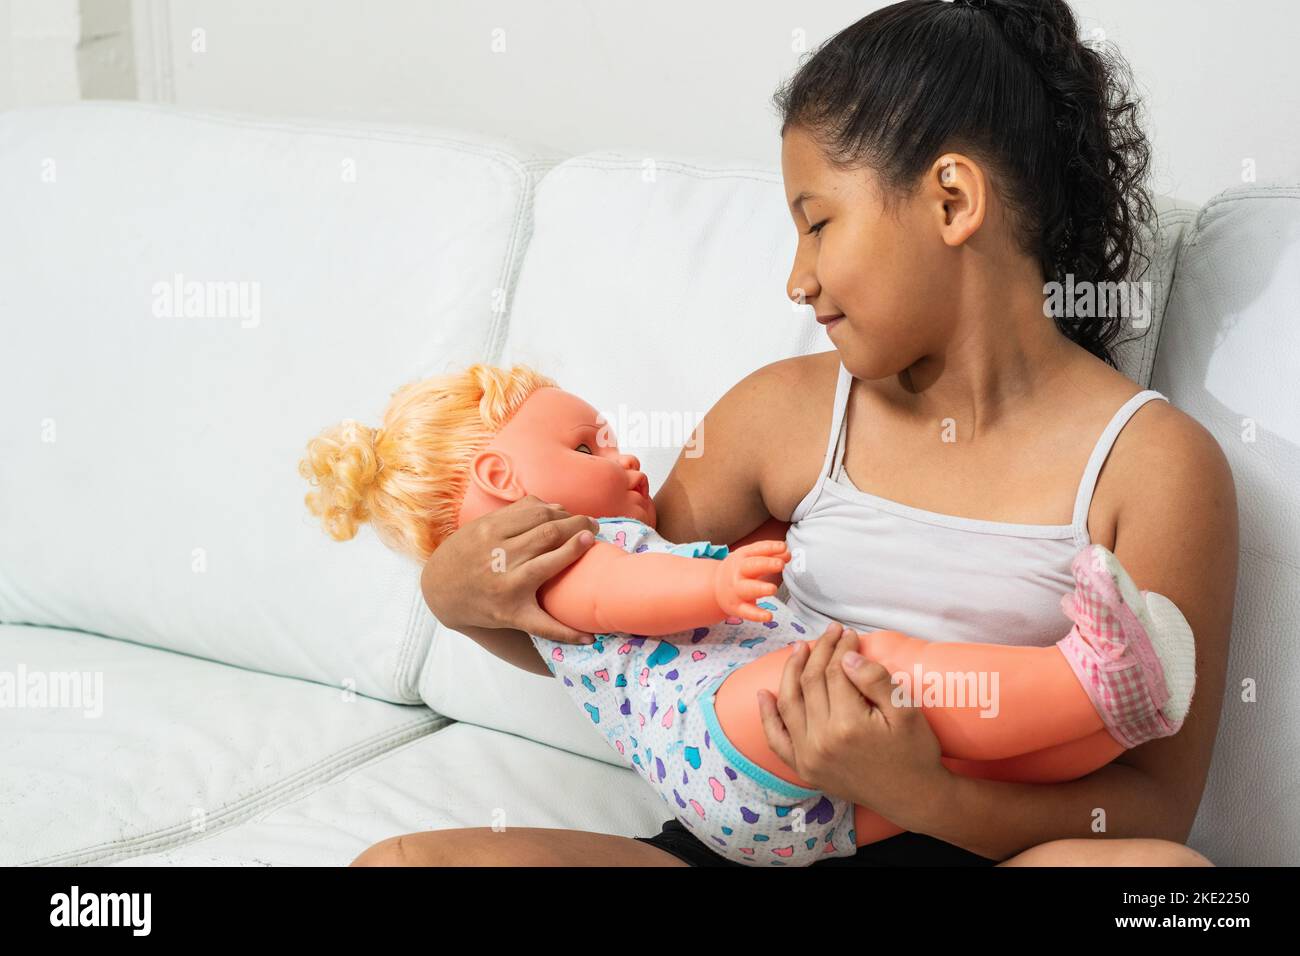 latina Brünette Mädchen, spielt mit der Puppe, als wäre es ihre Tochter. Das kleine Mädchen hält ihre Puppe, als wäre es real. Stockfoto